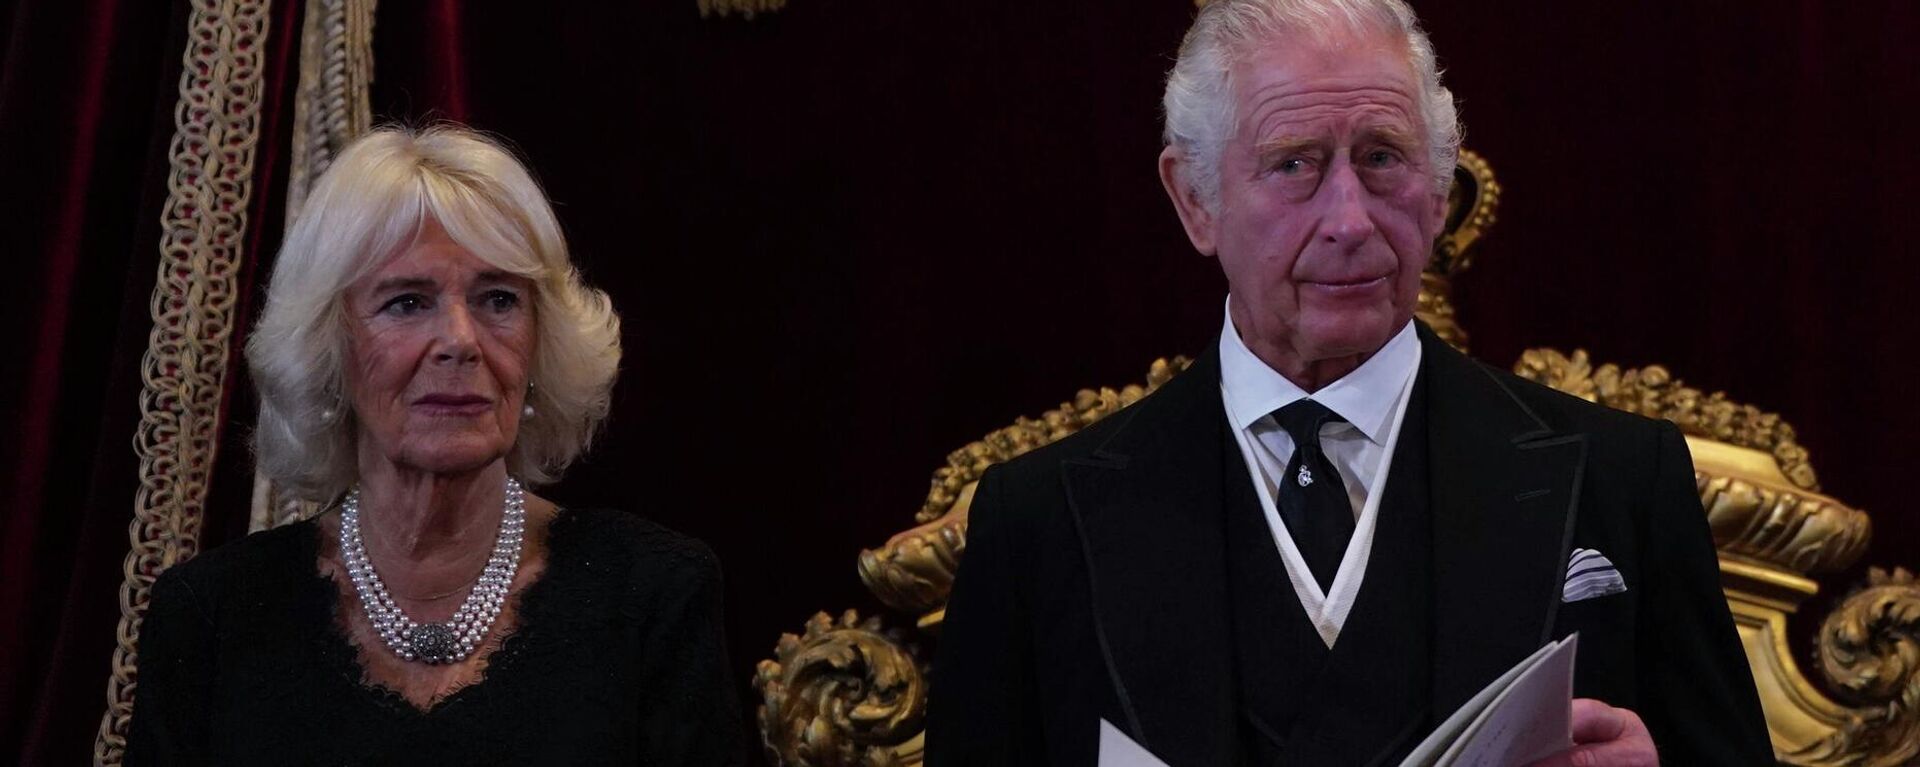 الملك تشارلز الثالث وكاميلا ، قرينة الملكة أثناء مجلس الانضمام في قصر سانت جيمس، لندن، إنجلترا 10 سبتمبر 2022، حيث تم إعلان الملك تشارلز الثالث ملكًا رسميًا. - سبوتنيك عربي, 1920, 09.11.2022